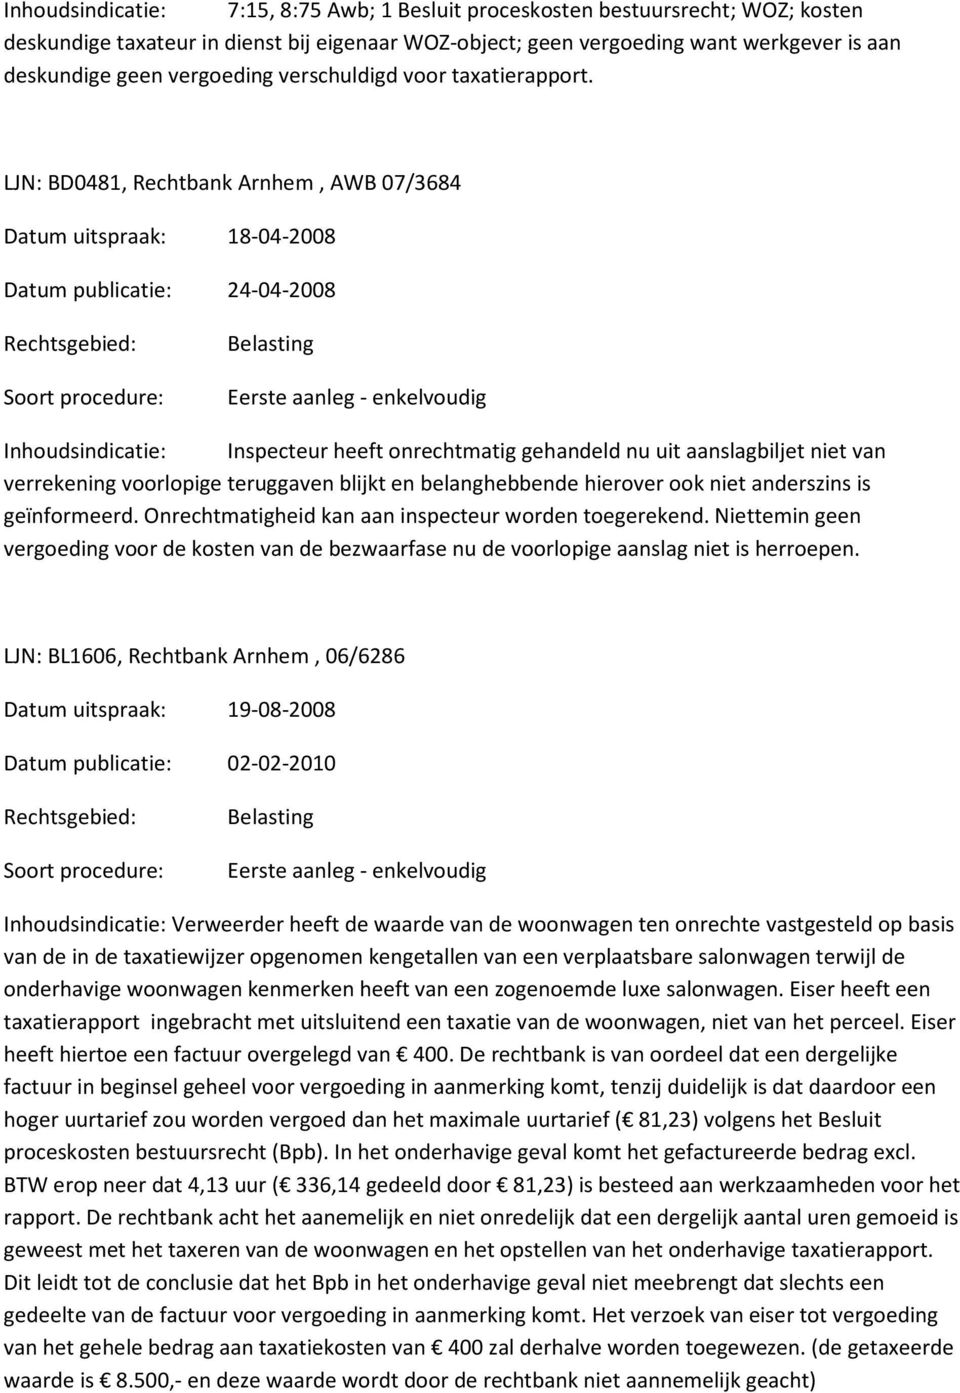 LJN: BD0481, Rechtbank Arnhem, AWB 07/3684 Datum uitspraak: 18-04-2008 Datum publicatie: 24-04-2008 Inhoudsindicatie: Inspecteur heeft onrechtmatig gehandeld nu uit aanslagbiljet niet van verrekening